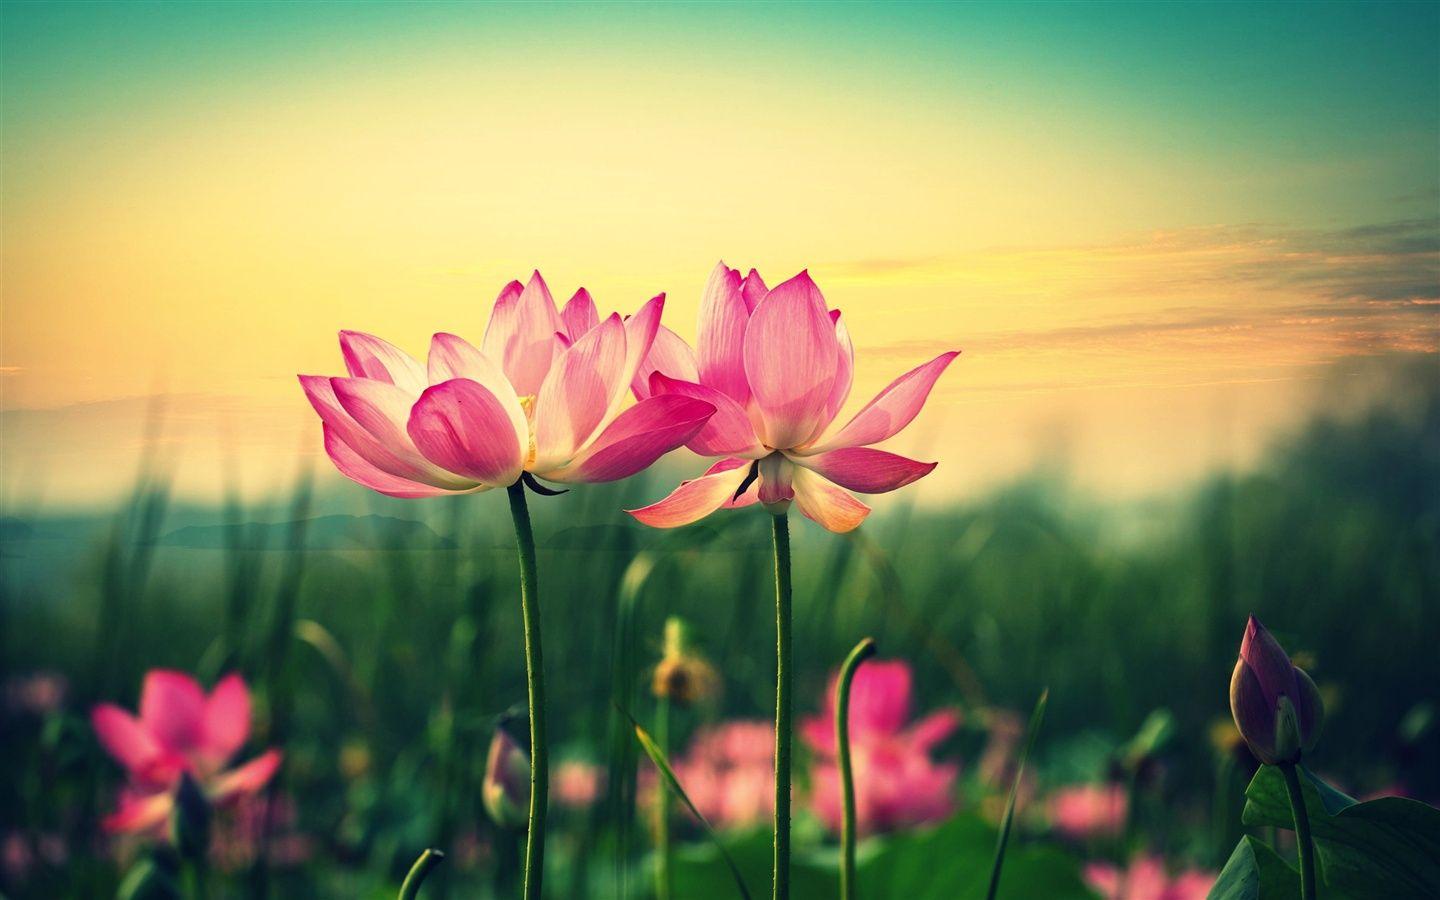 Pink lotus, flowers at sunset wallpaper 1440x900